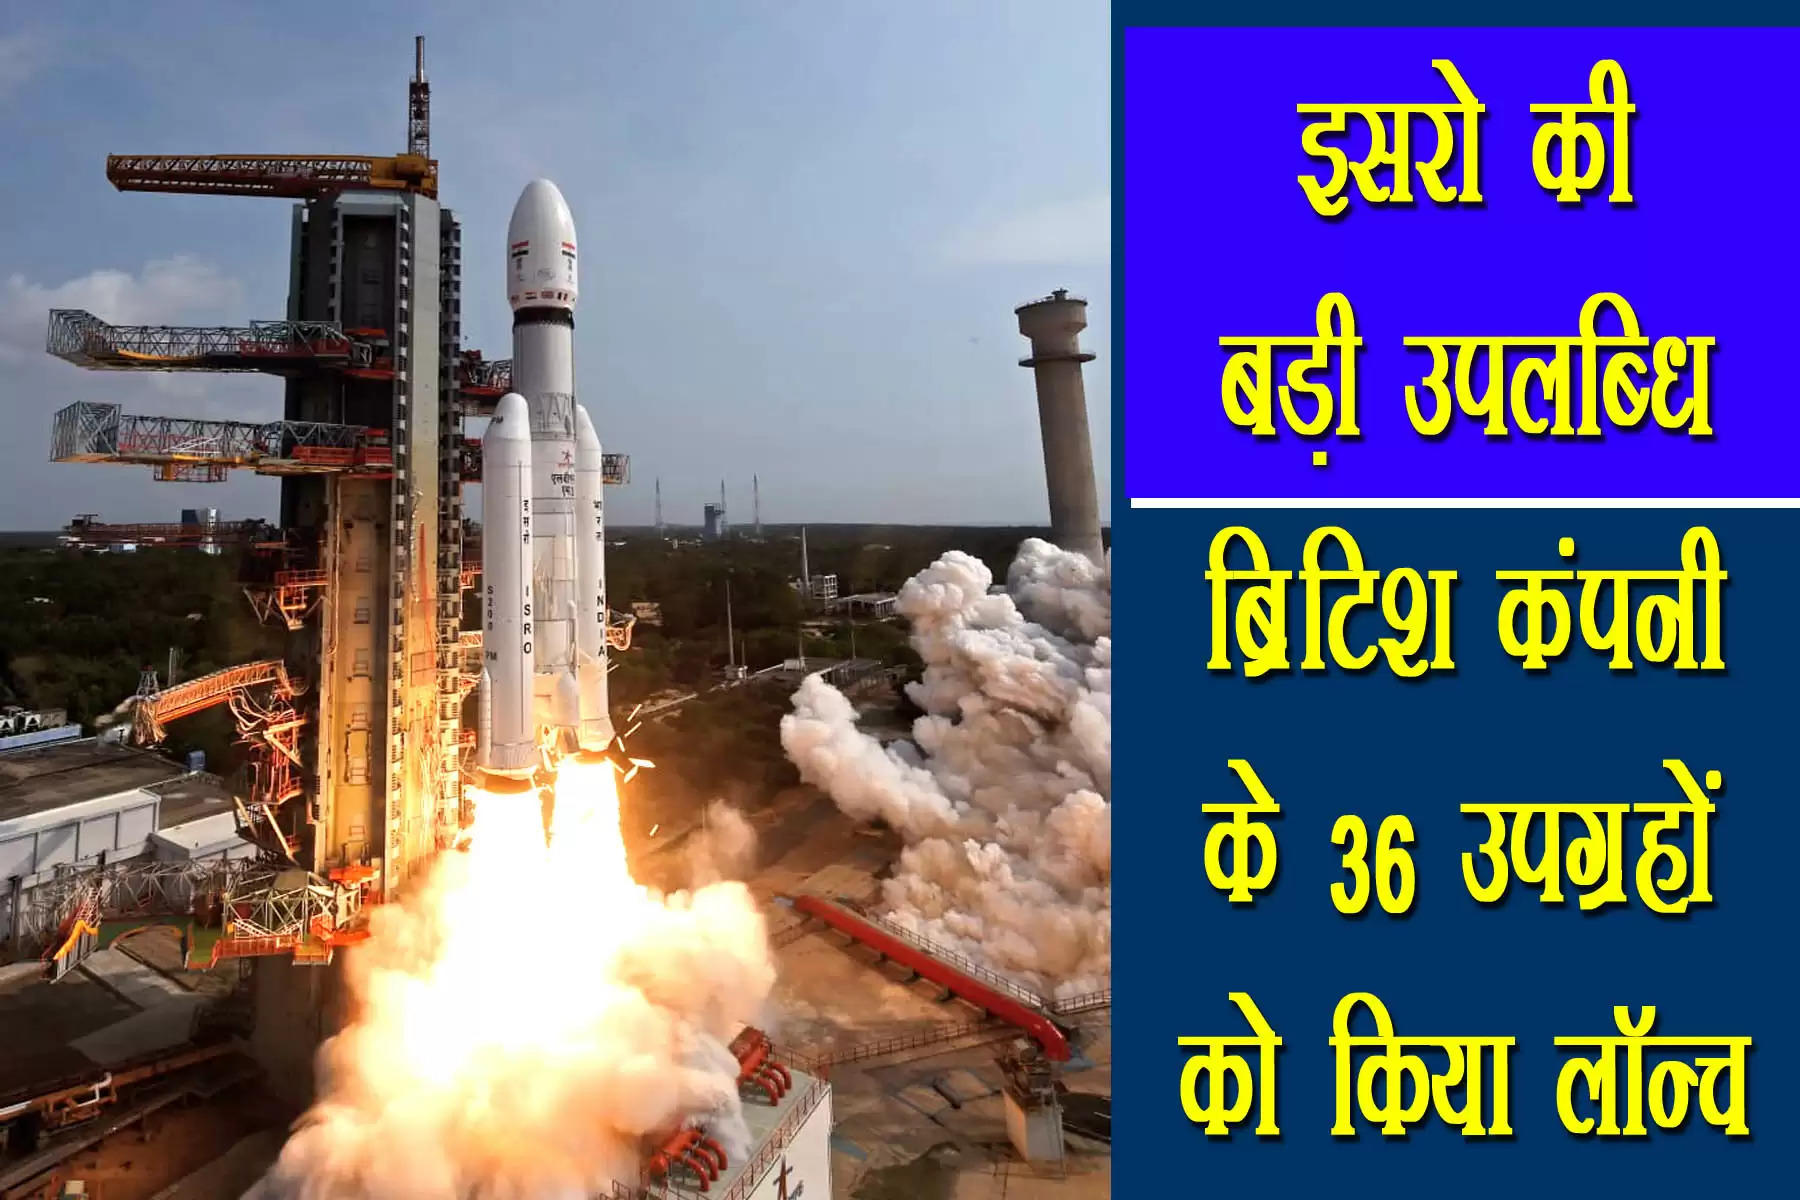 ISRO Will Launch 36 Satellites Today On Sunday      नई दिल्ली। भारतीय अंतरिक्ष अनुसंधान संगठन (ISRO) के साथ मिलकर लो-अर्थ ऑर्बिट सैटेलाइट संचार कंपनी वनवेब रविवार को 36 सैटेलाइटों को सफलतापूर्वक लॉन्च कर दिया। यह अपने आप में एक रिकॉर्ड है।  इन सैटेलाइटों को 26 मार्च की सुबह 9 बजे आंध्र प्रदेश के श्रीहरिकोटा में सतीश धवन अंतरिक्ष केंद्र से लॉन्च किया गया। 